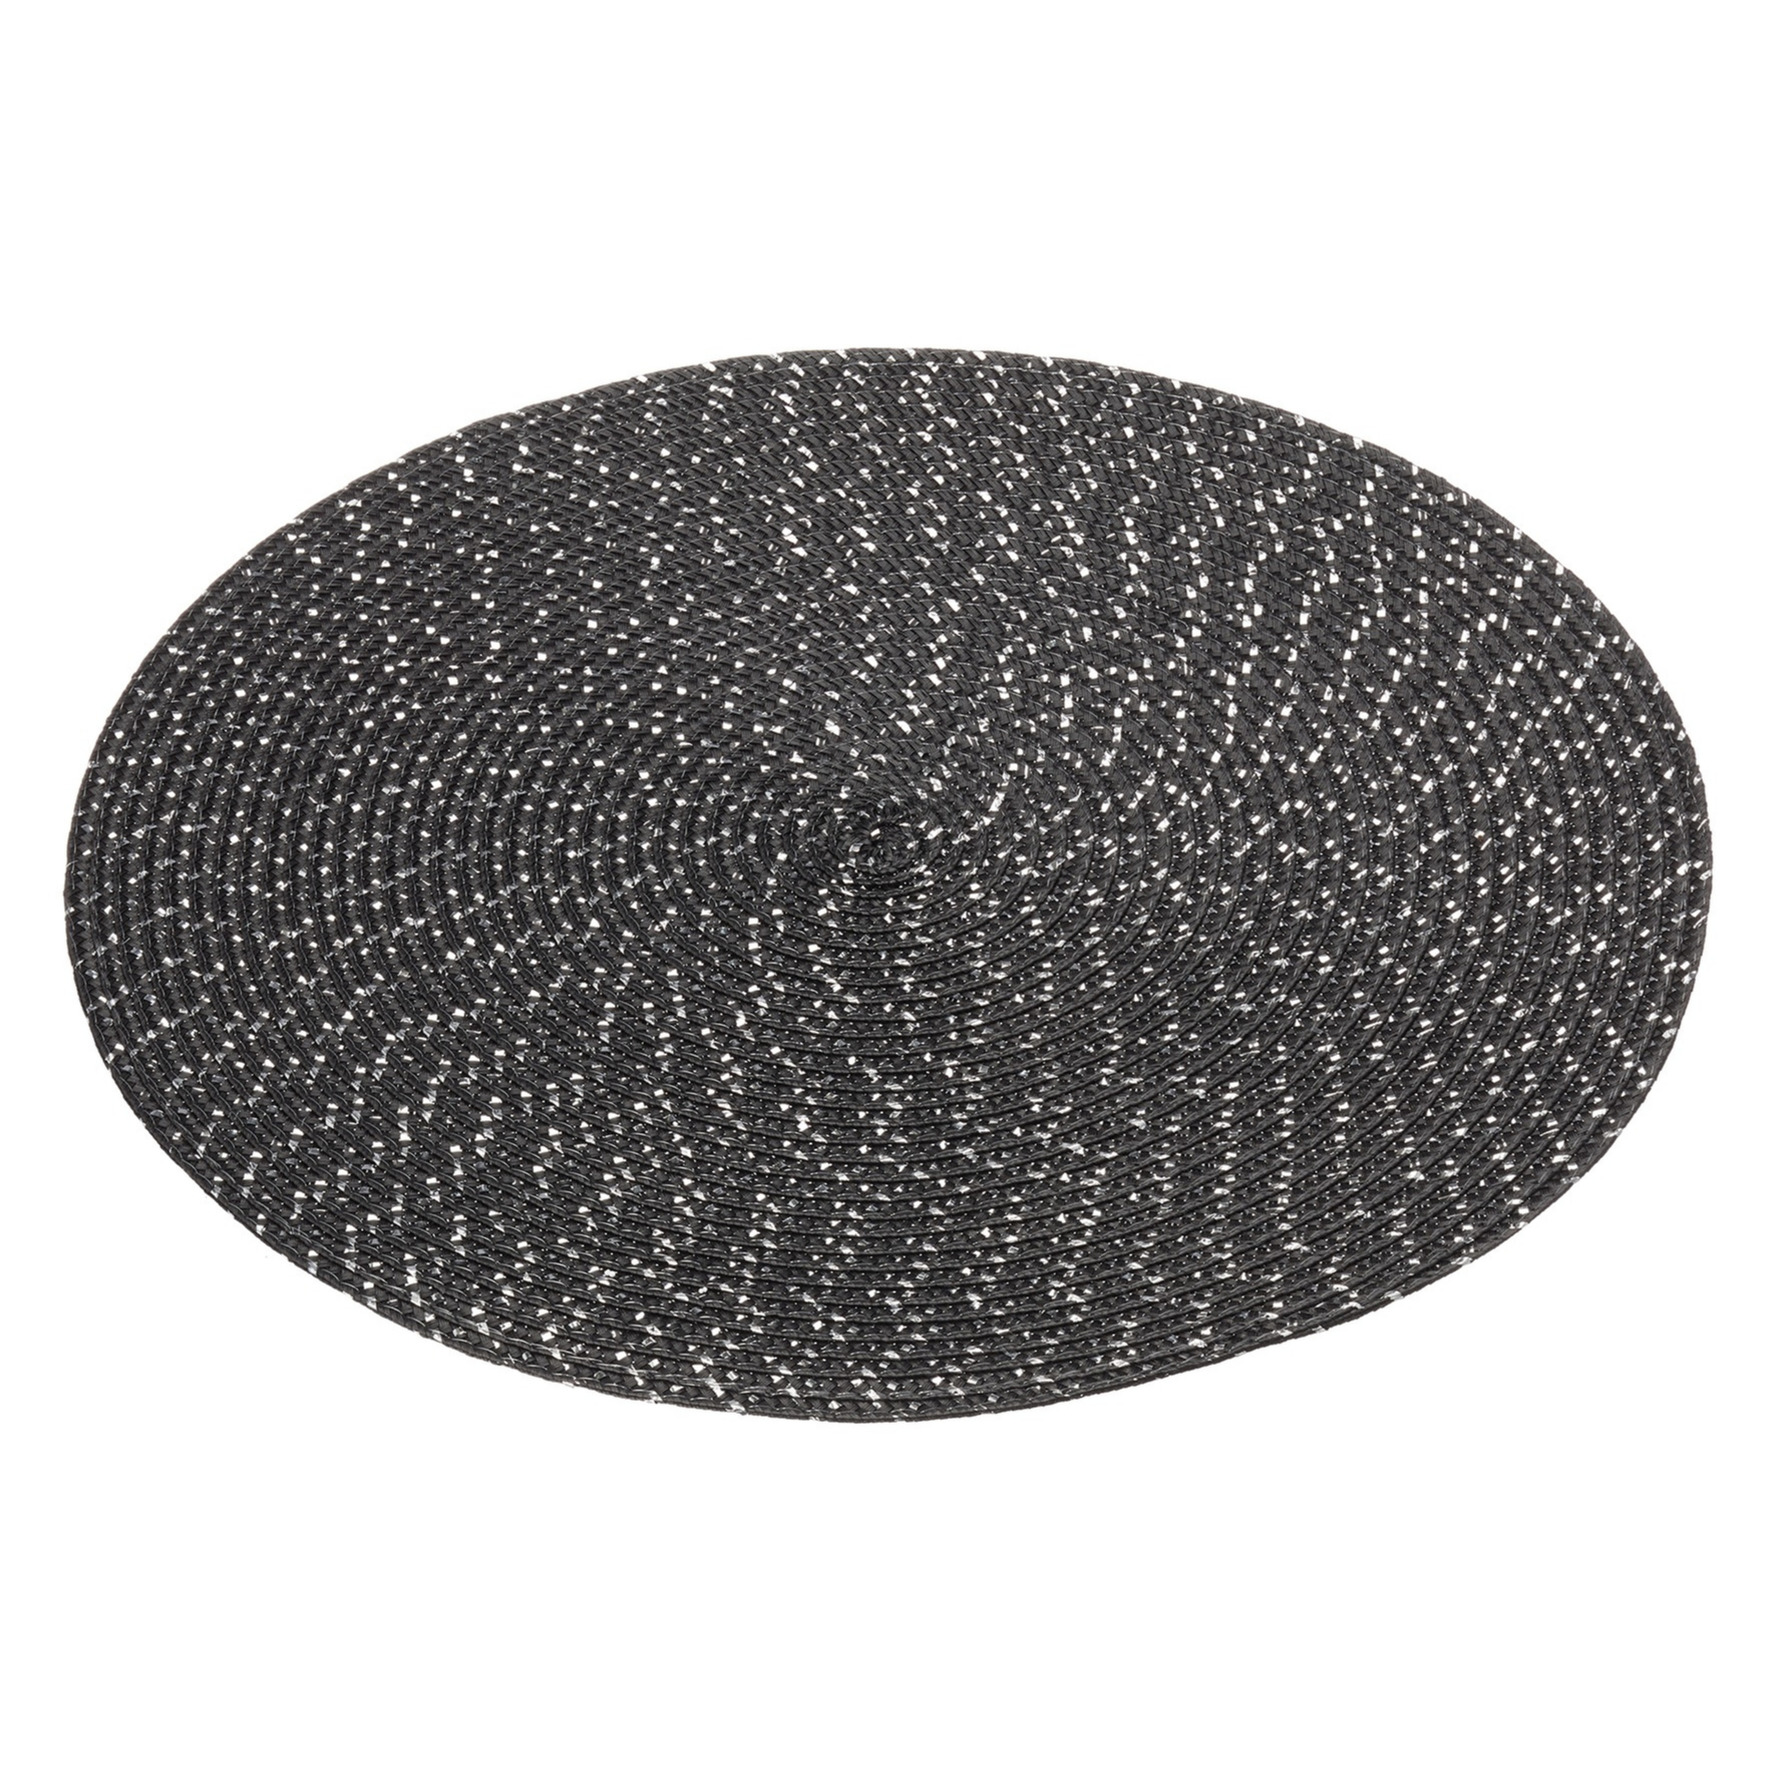 1x Tafelonderleggers-placemats rond zwart met glitter 38 cm